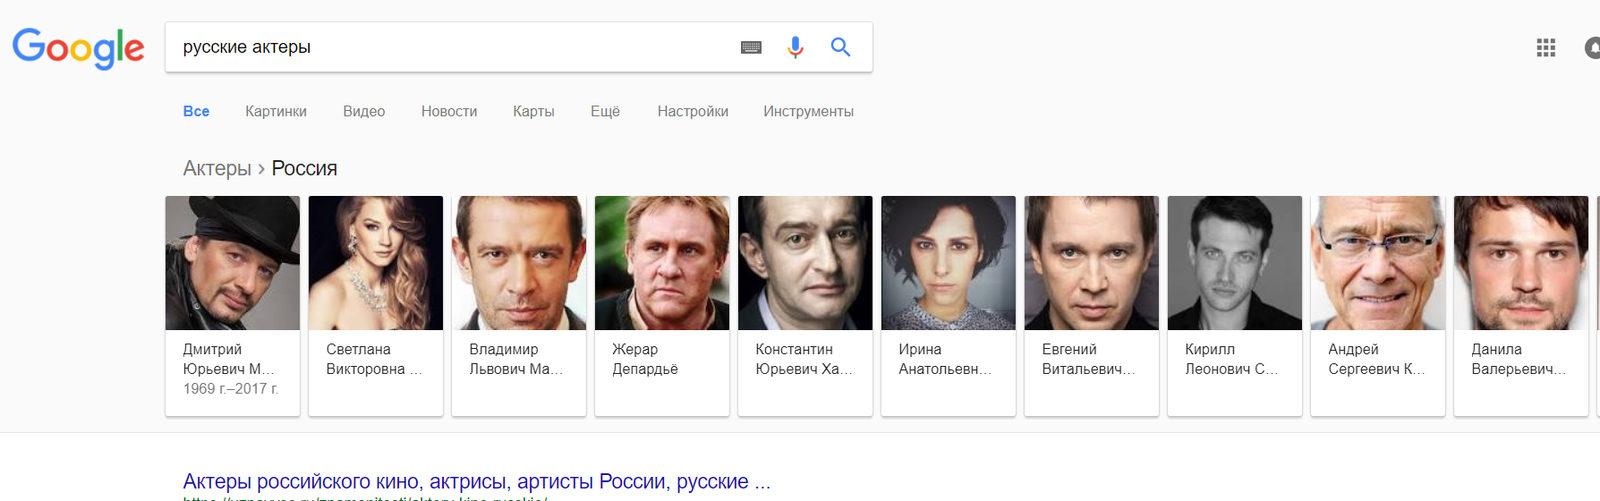 You are Russian? - Si - Gerard Depardieu, Russian, Coub